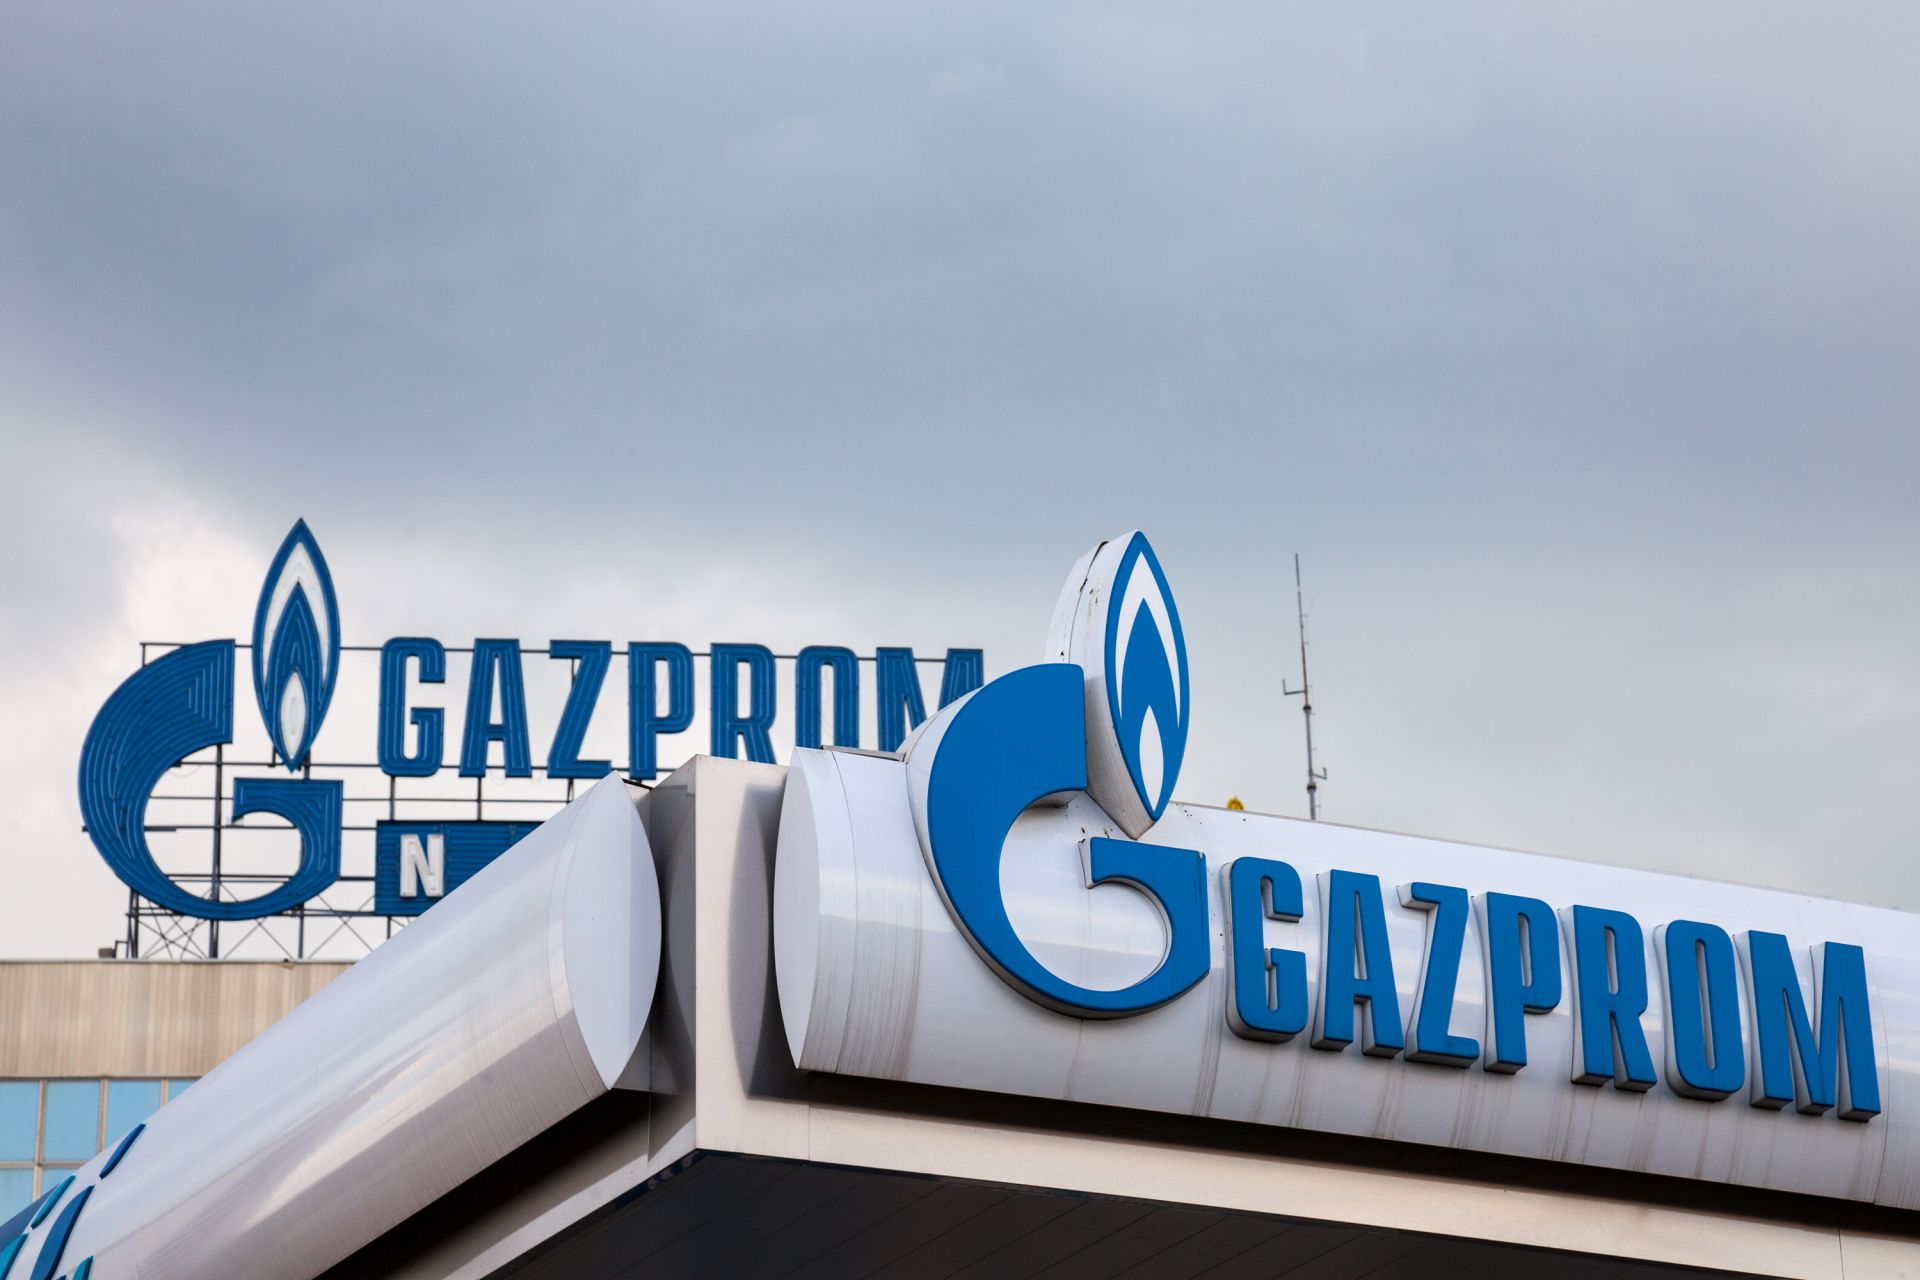 Високите цени на газа и ниските нива за запълненост на хранилищата до голяма степен се дължат на поведението на държавния газов доставчик Газпром, смята МАЕ